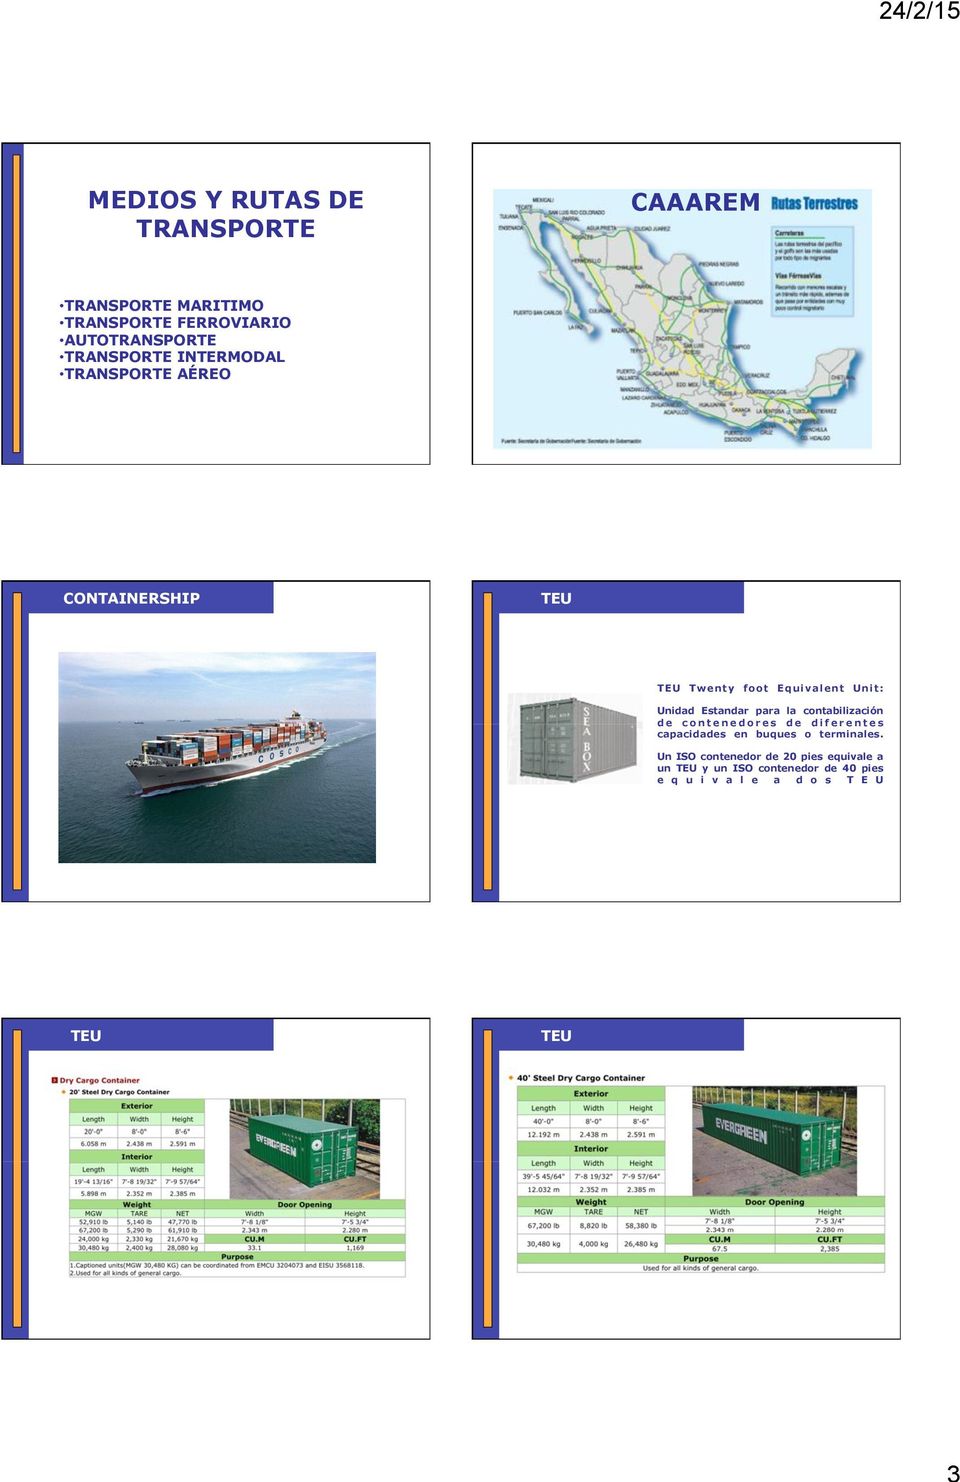 Unit: Unidad Estandar para la contabilización de contenedores de diferentes capacidades en buques o terminales.